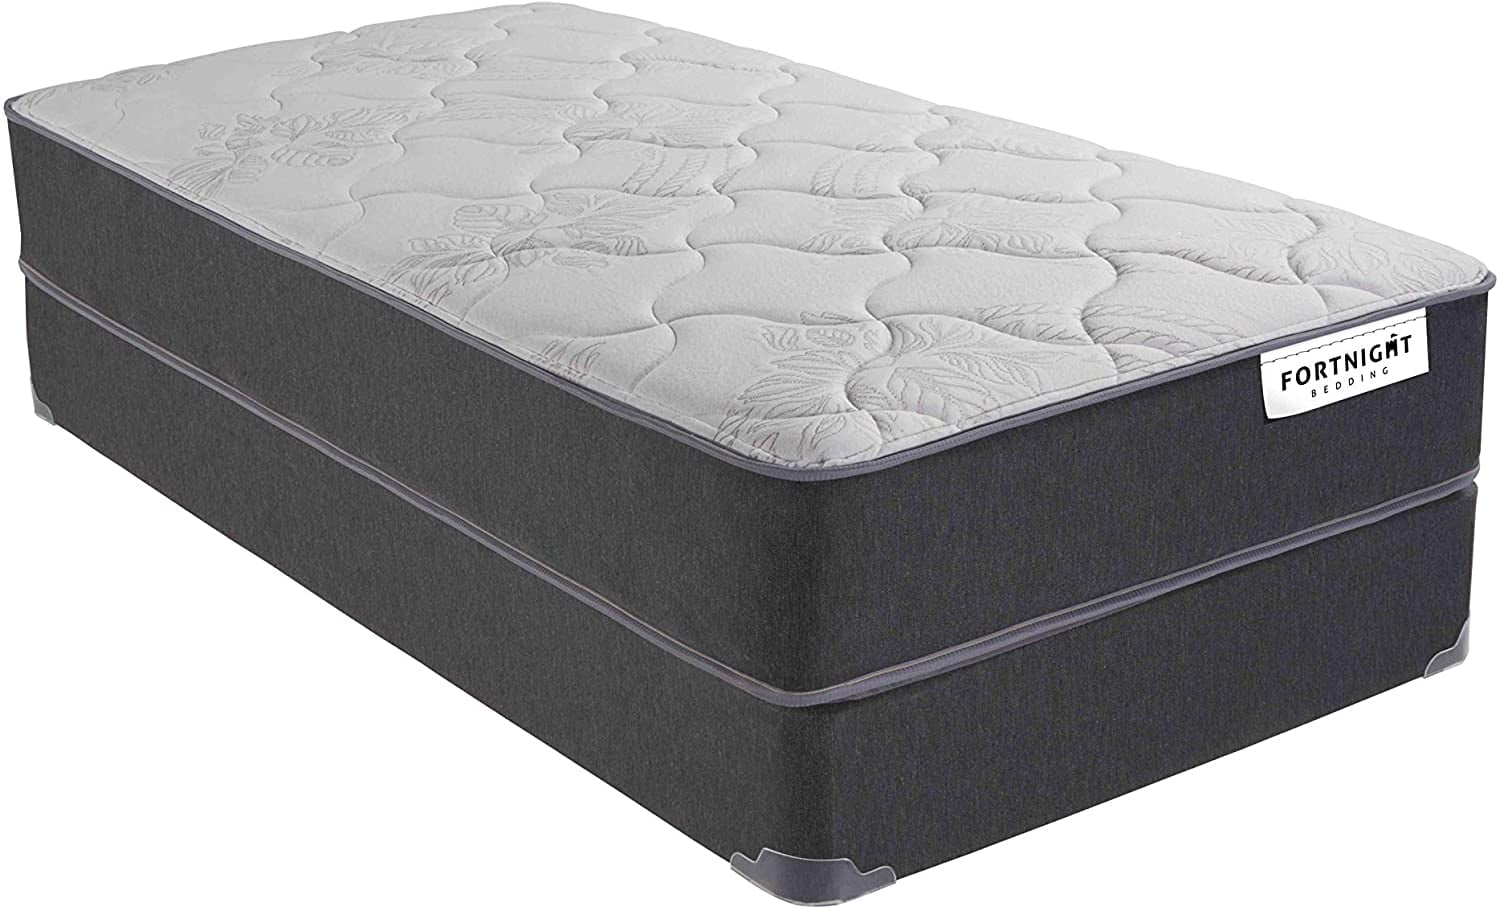 hybrid memory foam mattress queen fat people